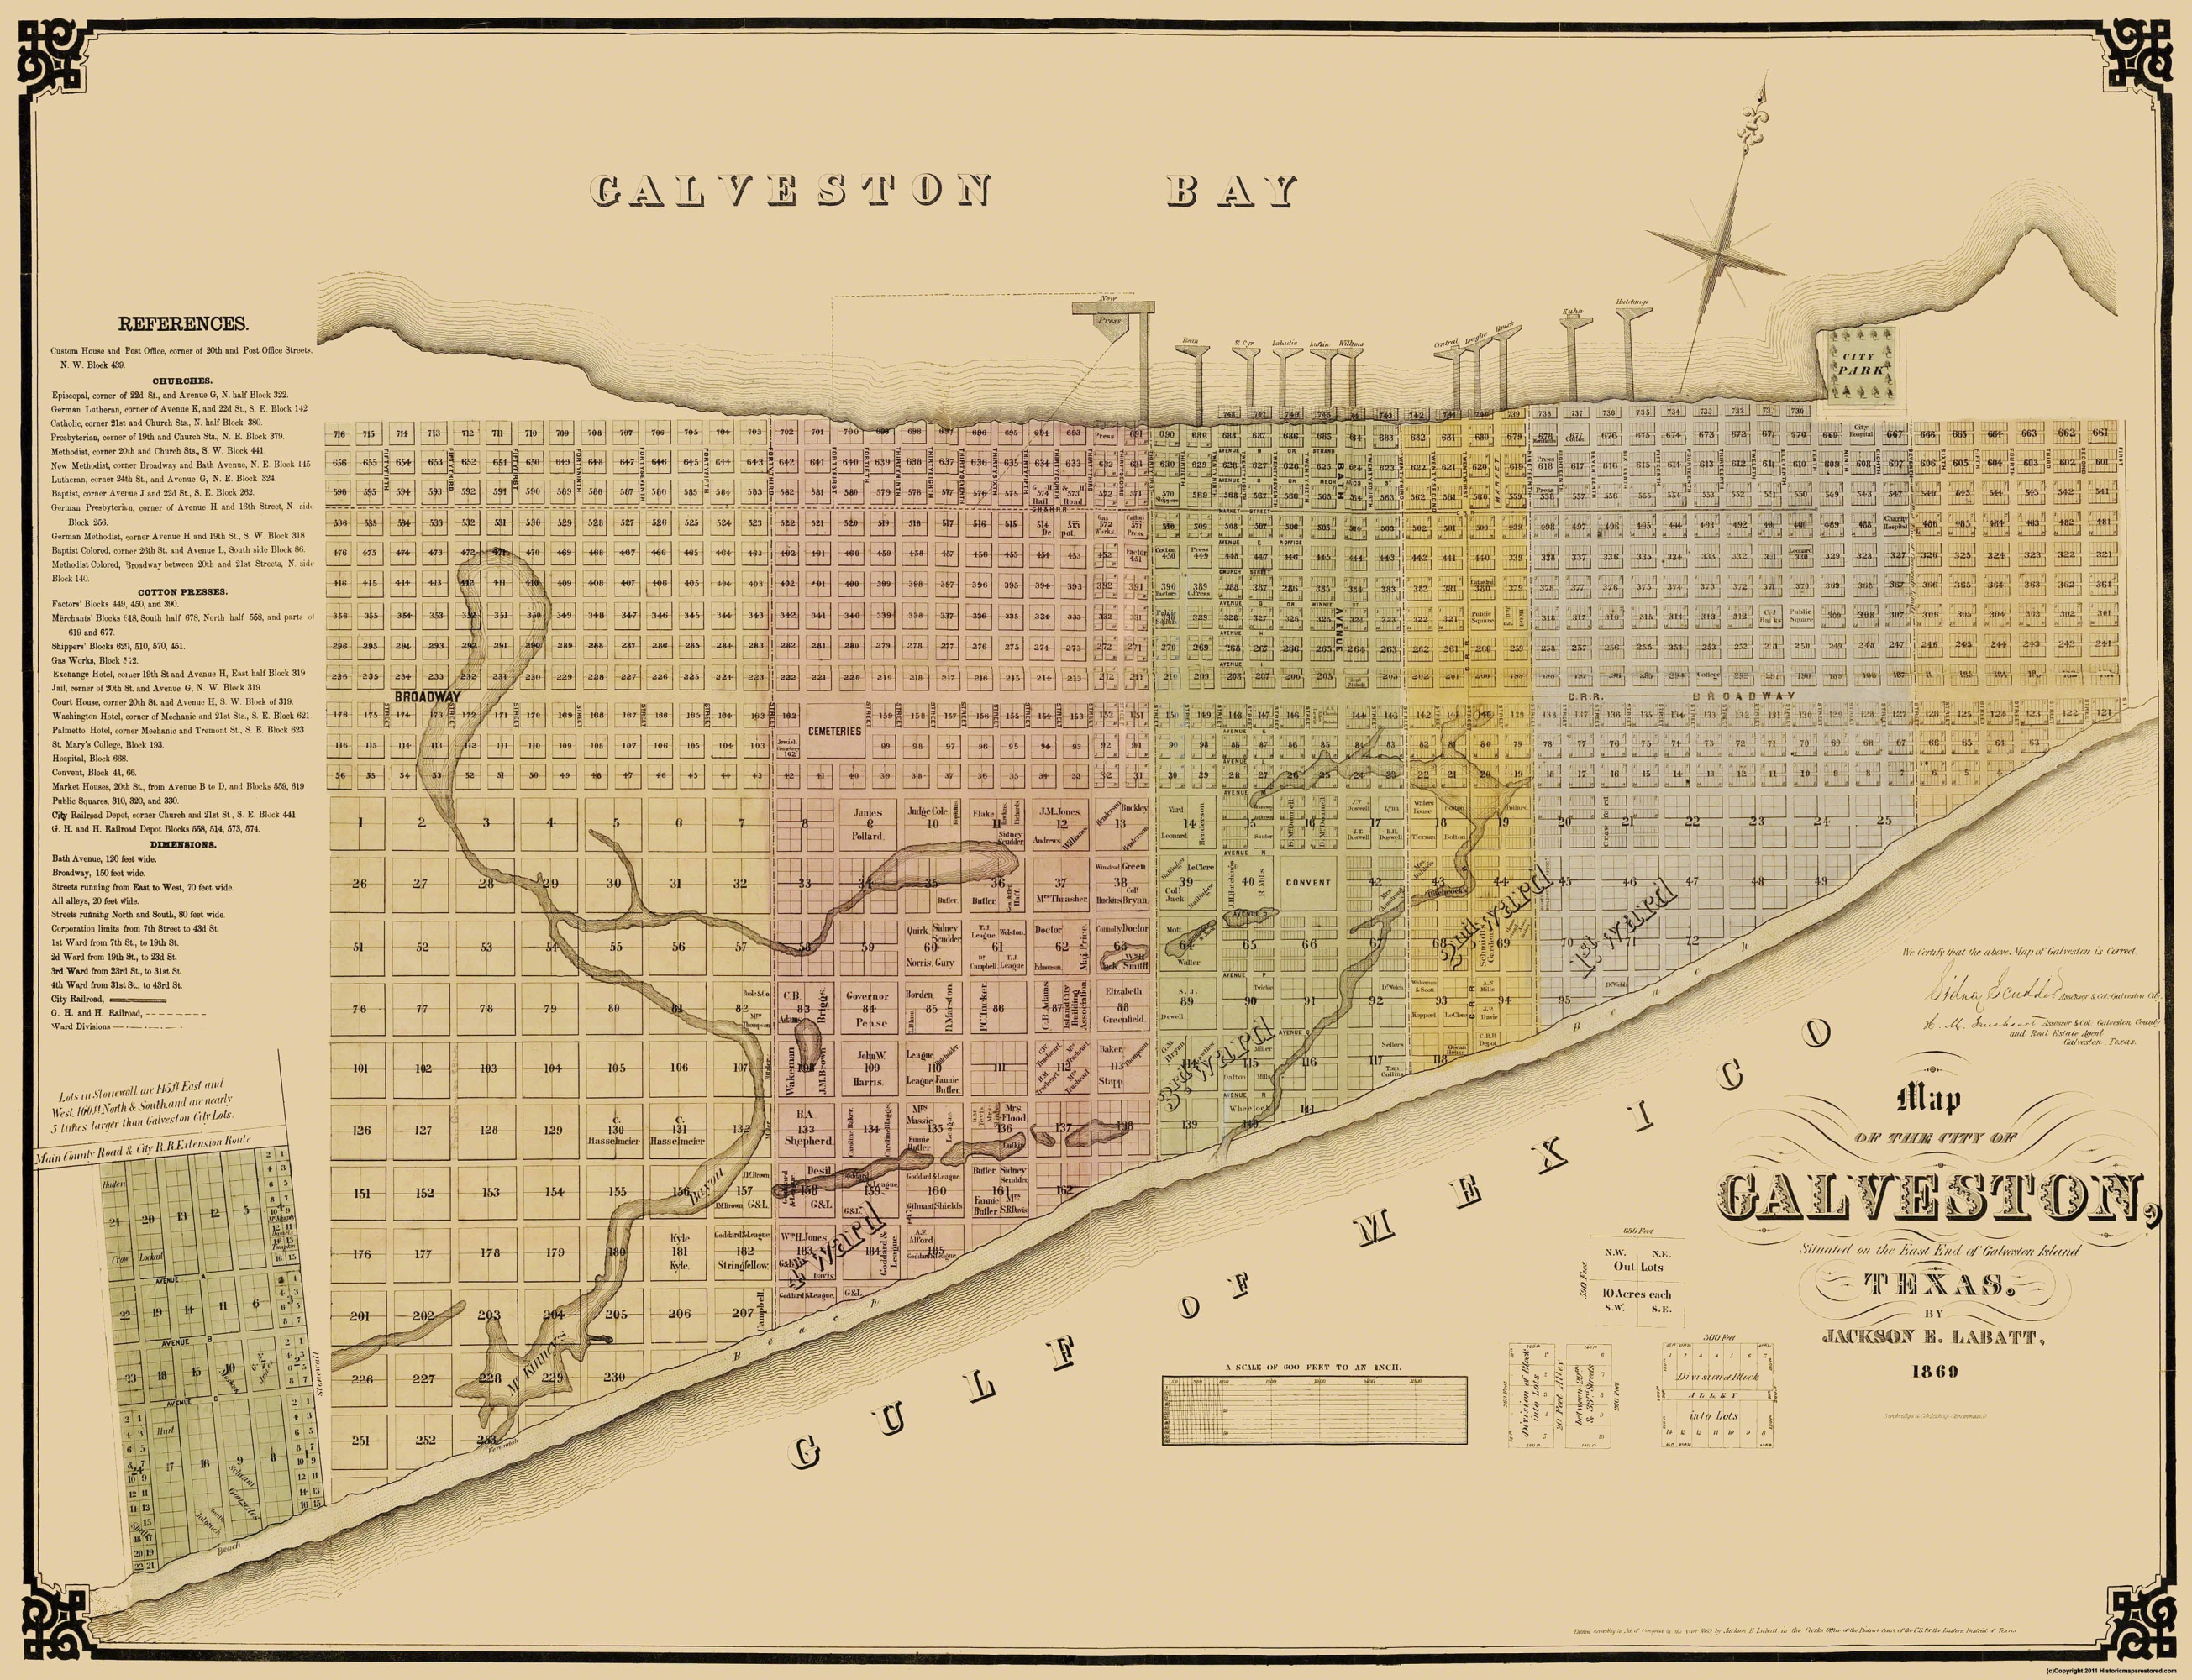 Old City Map - Galveston Texas Landowner - Labatt 1869 - Map Of Galveston Texas